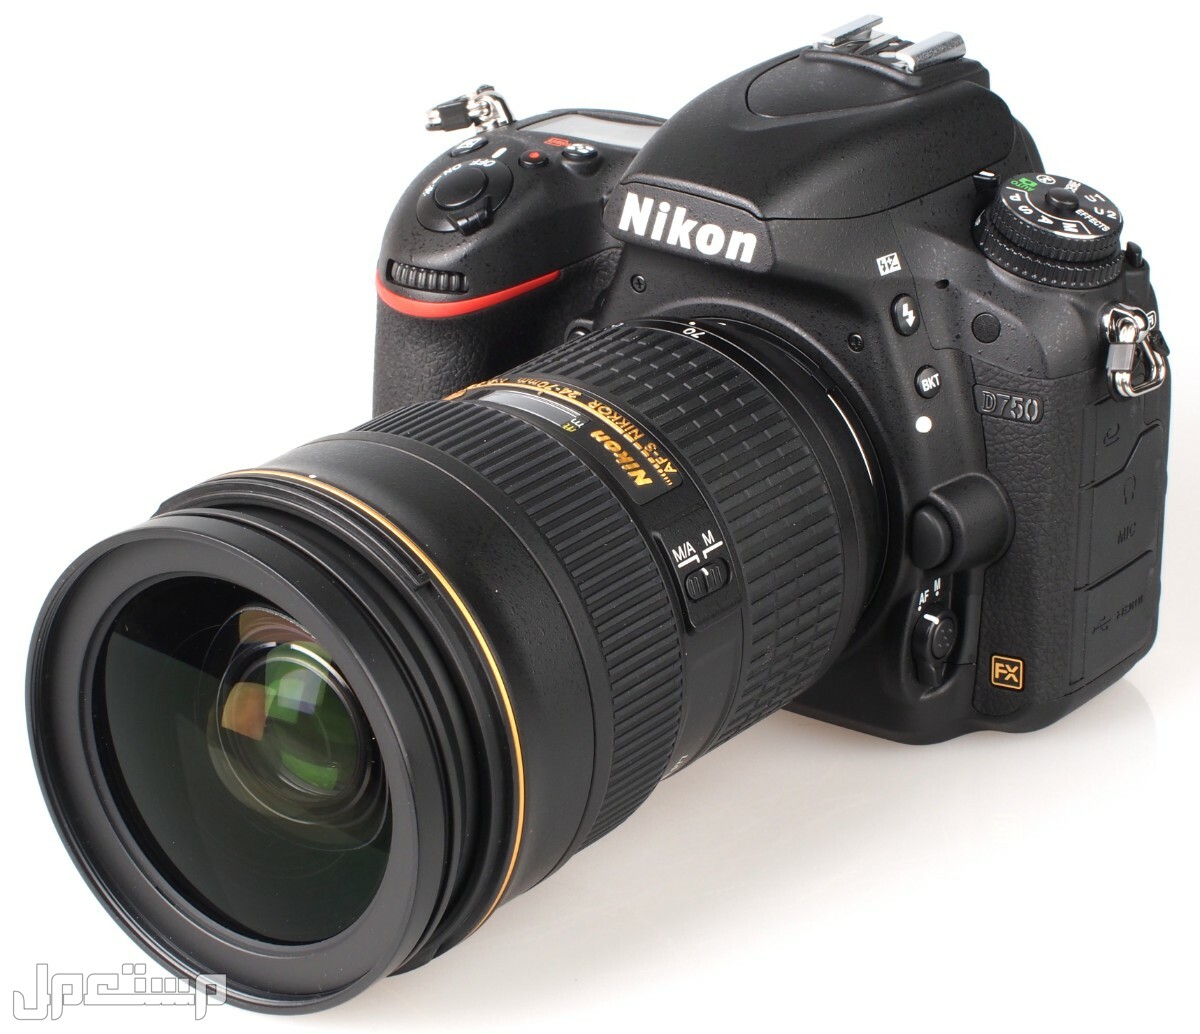 مواصفات ومميزات وأسعار أفضل أنواع كاميرات نيكون للمحترفين في اليَمَن كاميرا Nikon D750